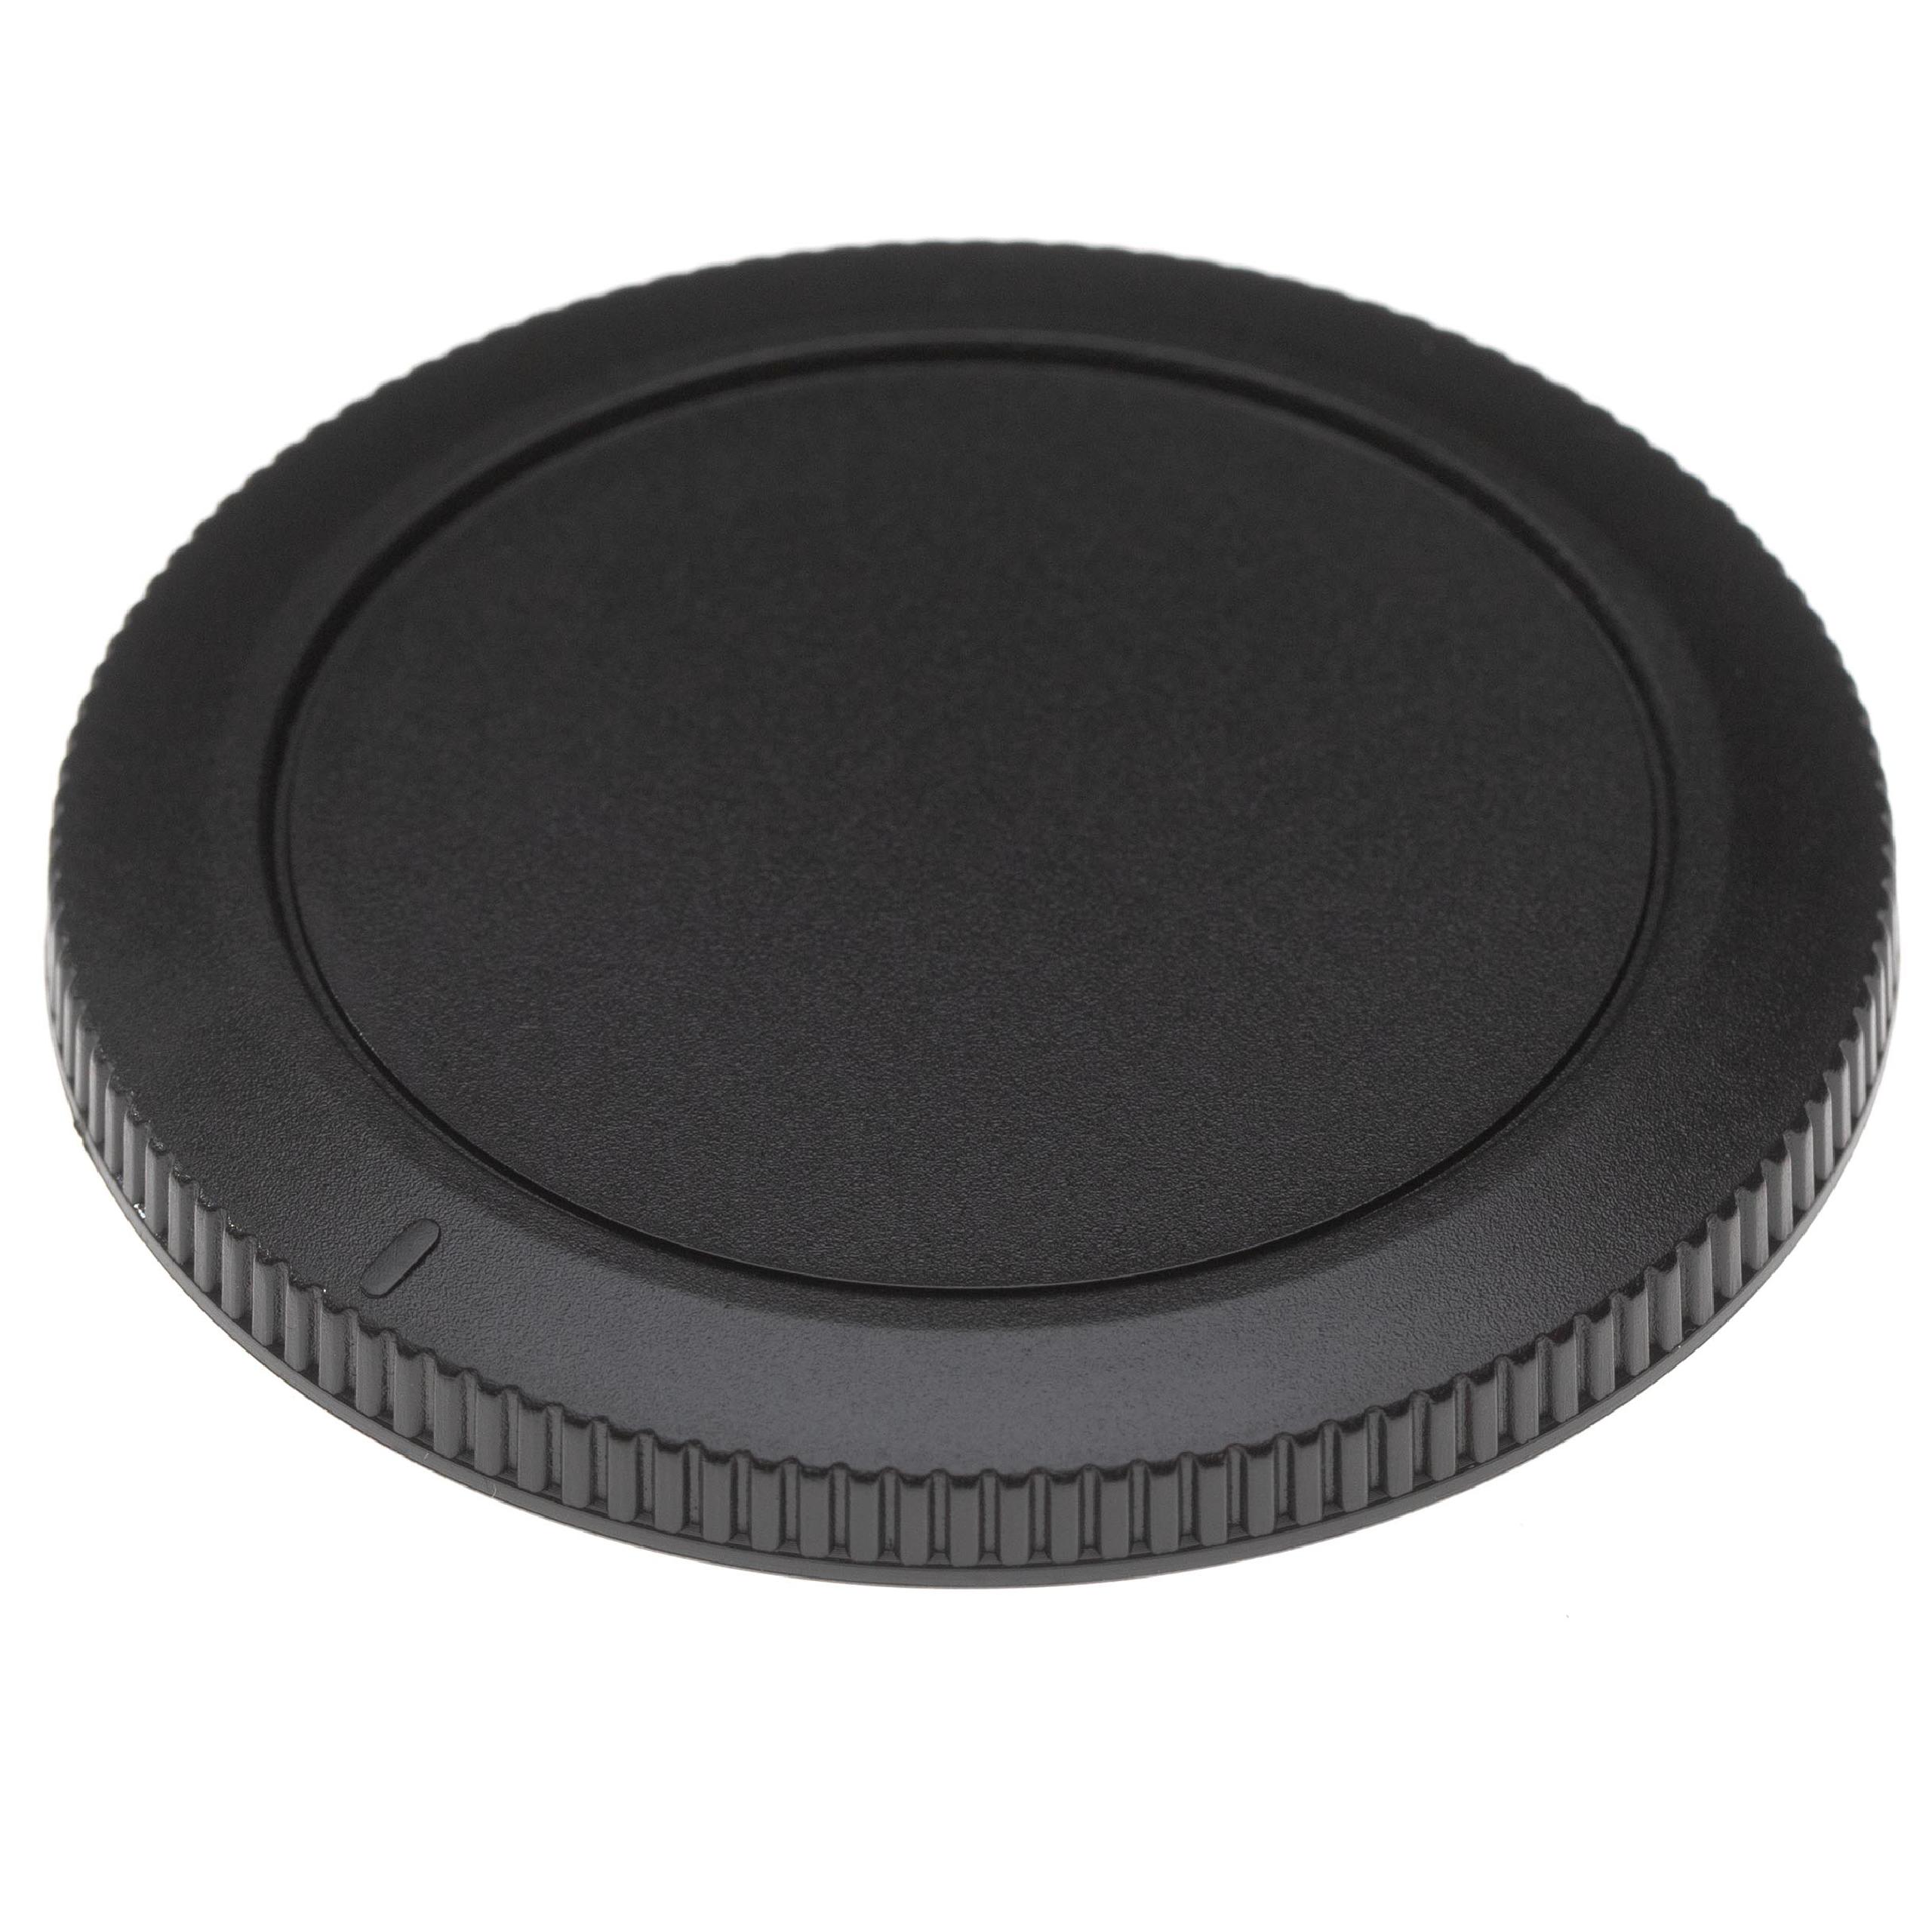 Housing Cap suitable for Canon EOS R, RP Camera, DSLR - Plastic, Black